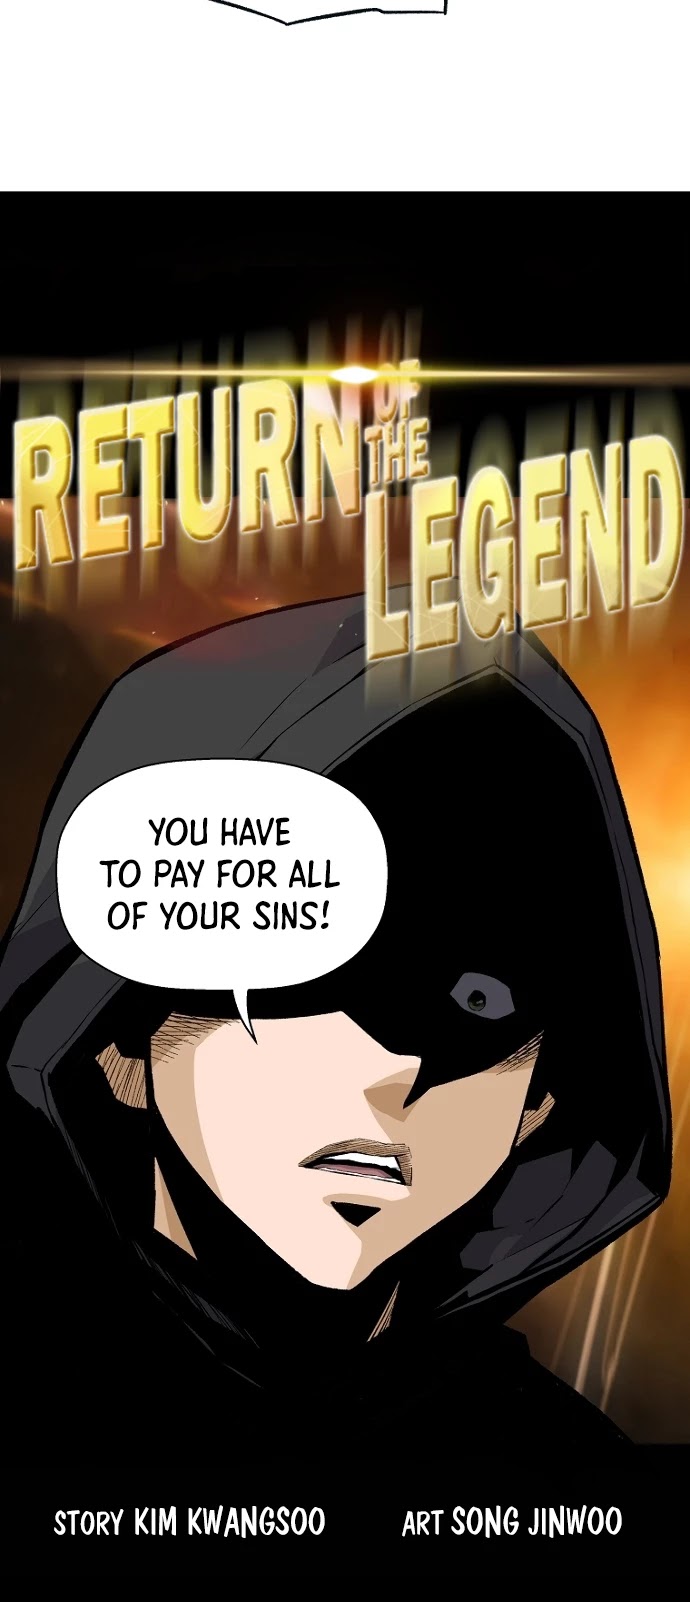 Return of the Legend, Return of the Legend manga, read Return of the Legend, Return of the Legend manga online